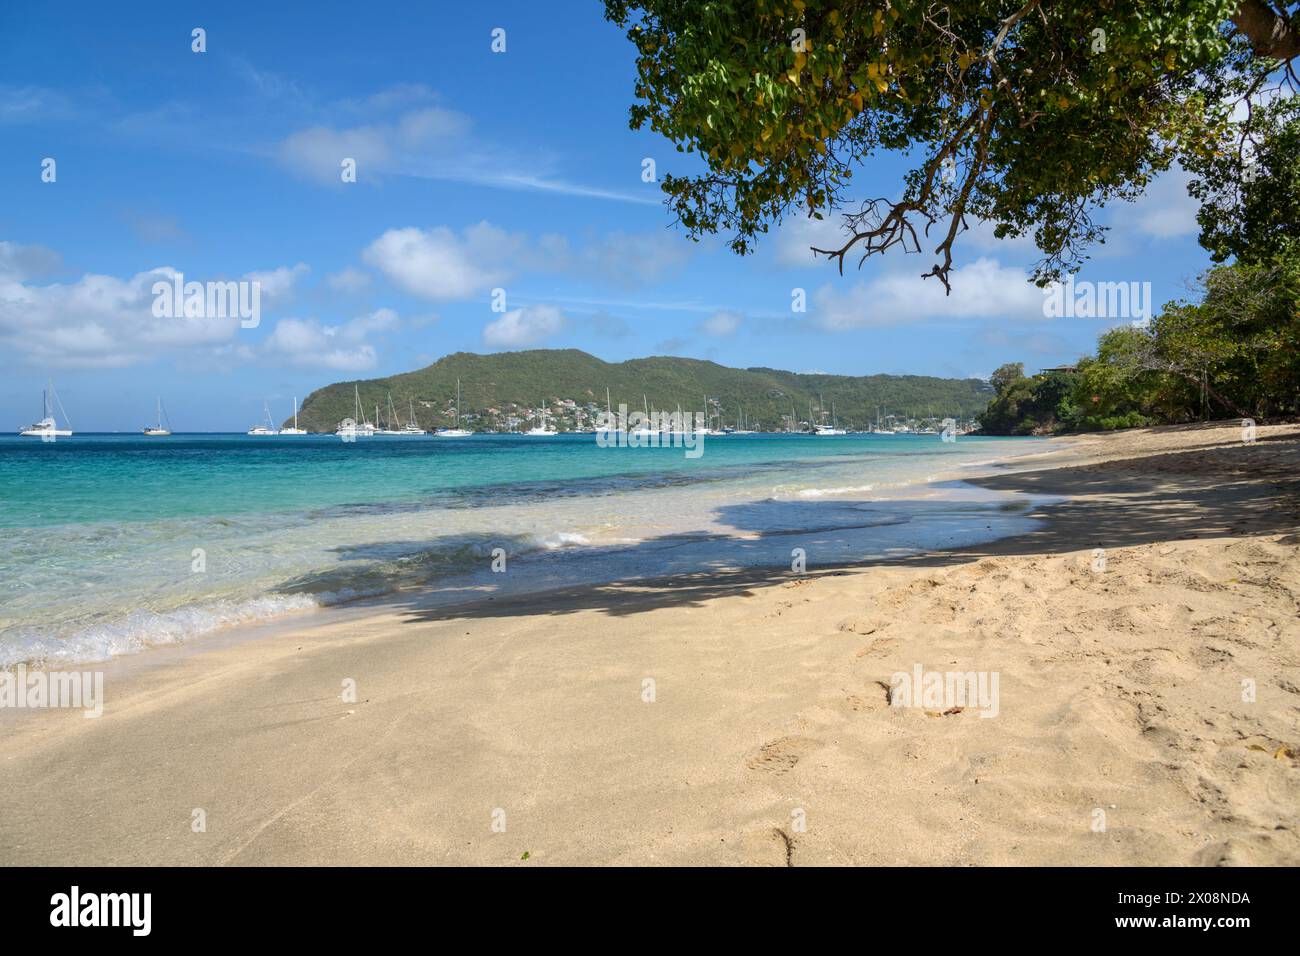 Plage de Lower Bay, île de Bequia, St Vincent et les Grenadines, Caraïbes Banque D'Images